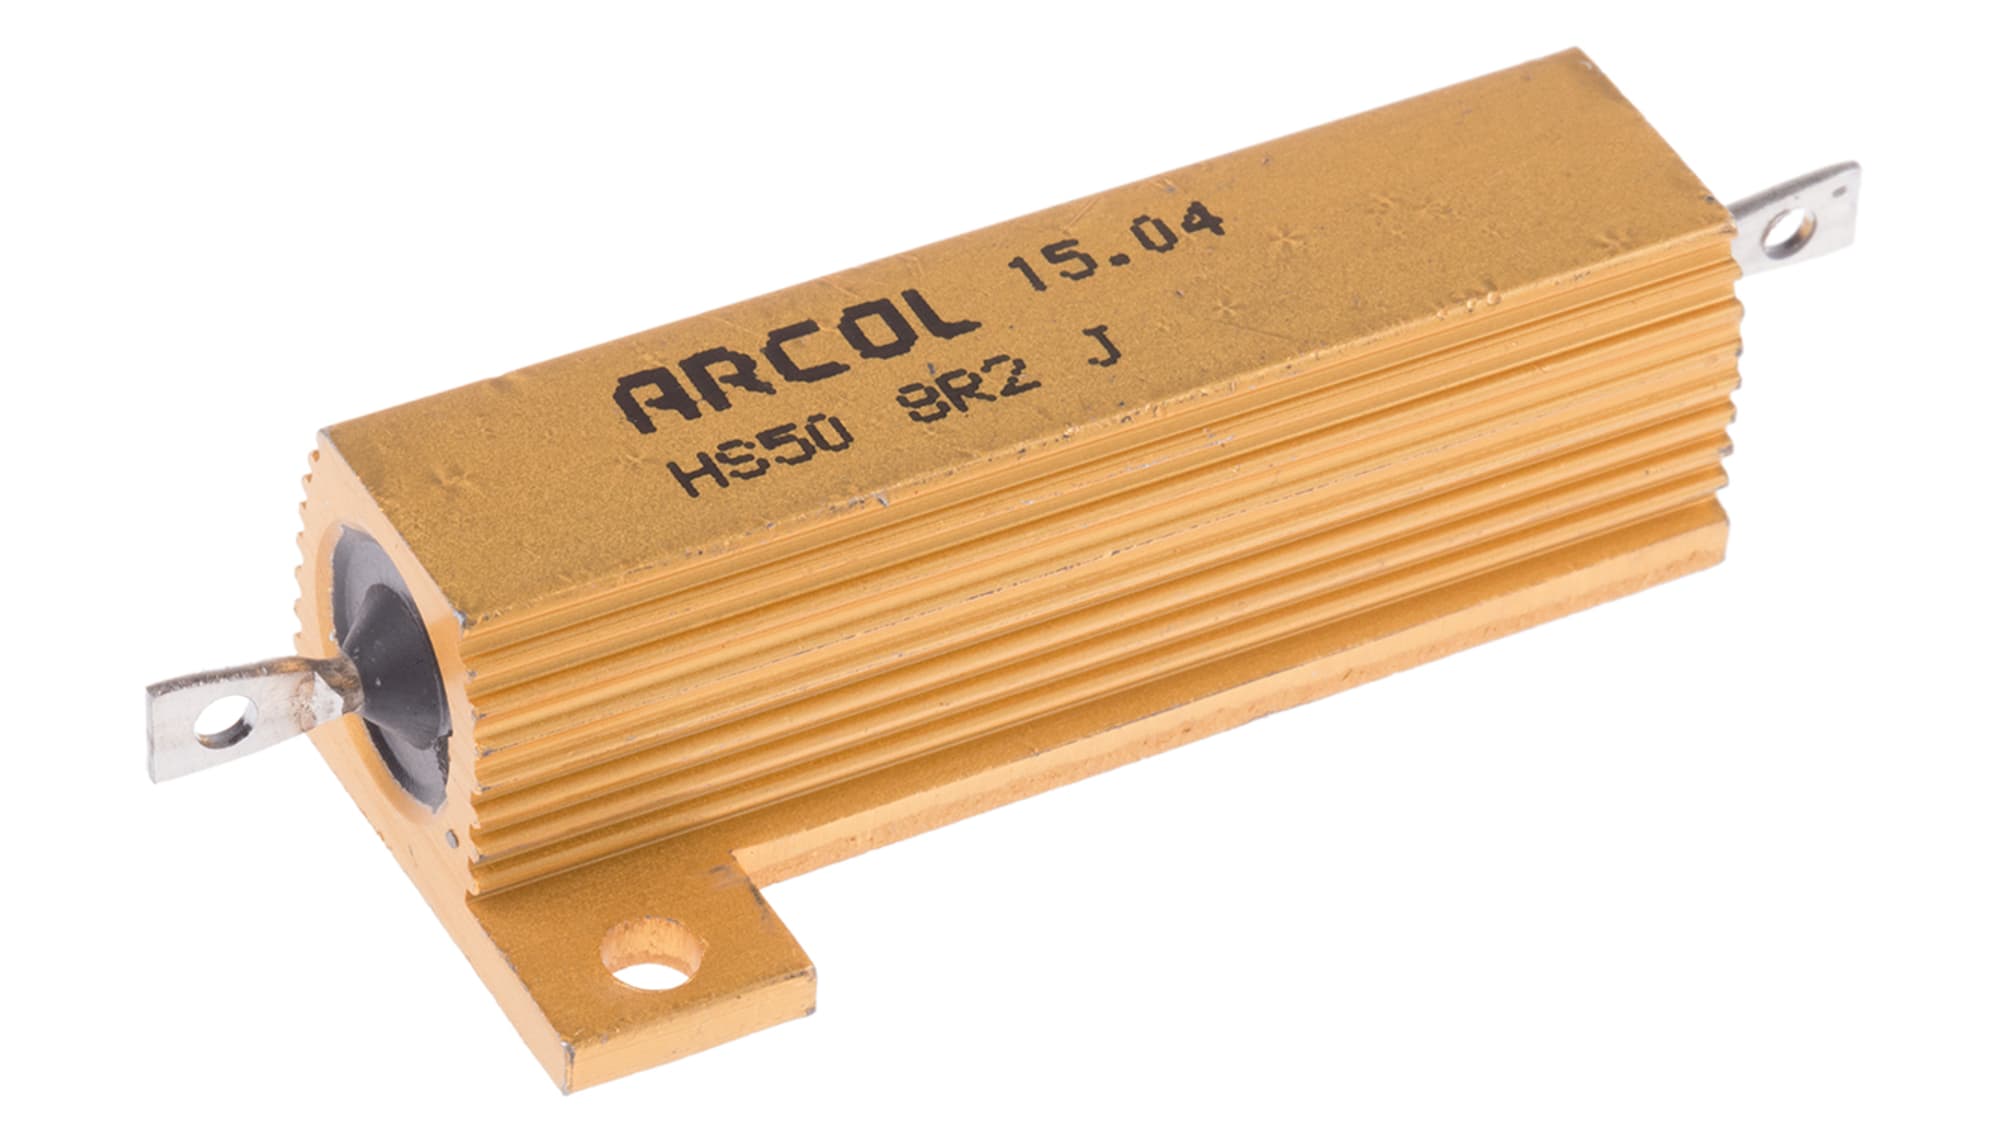 Резистор 50 ом 50 вт. Резистор hs50 1r j. Резисторы ARCOL hs25-0r1f. Резистор ARCOL hs25 220r j. Резистор 8 ом 50 ватт.